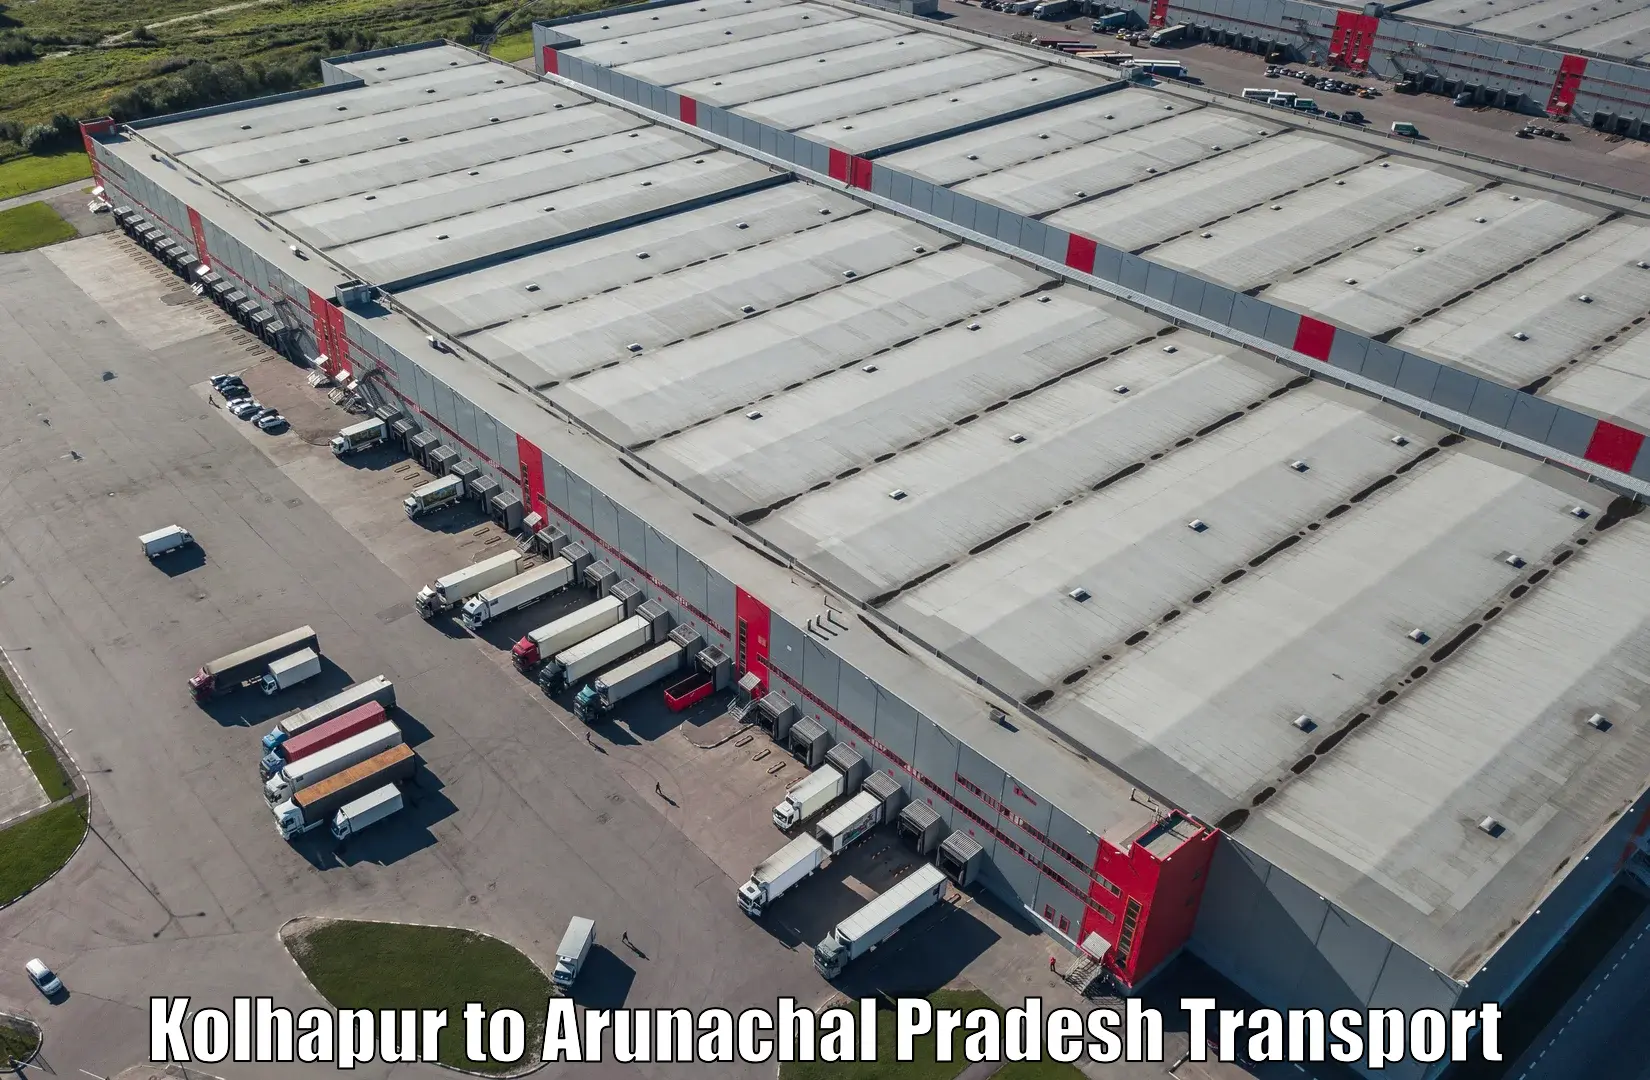 Furniture transport service Kolhapur to Arunachal Pradesh